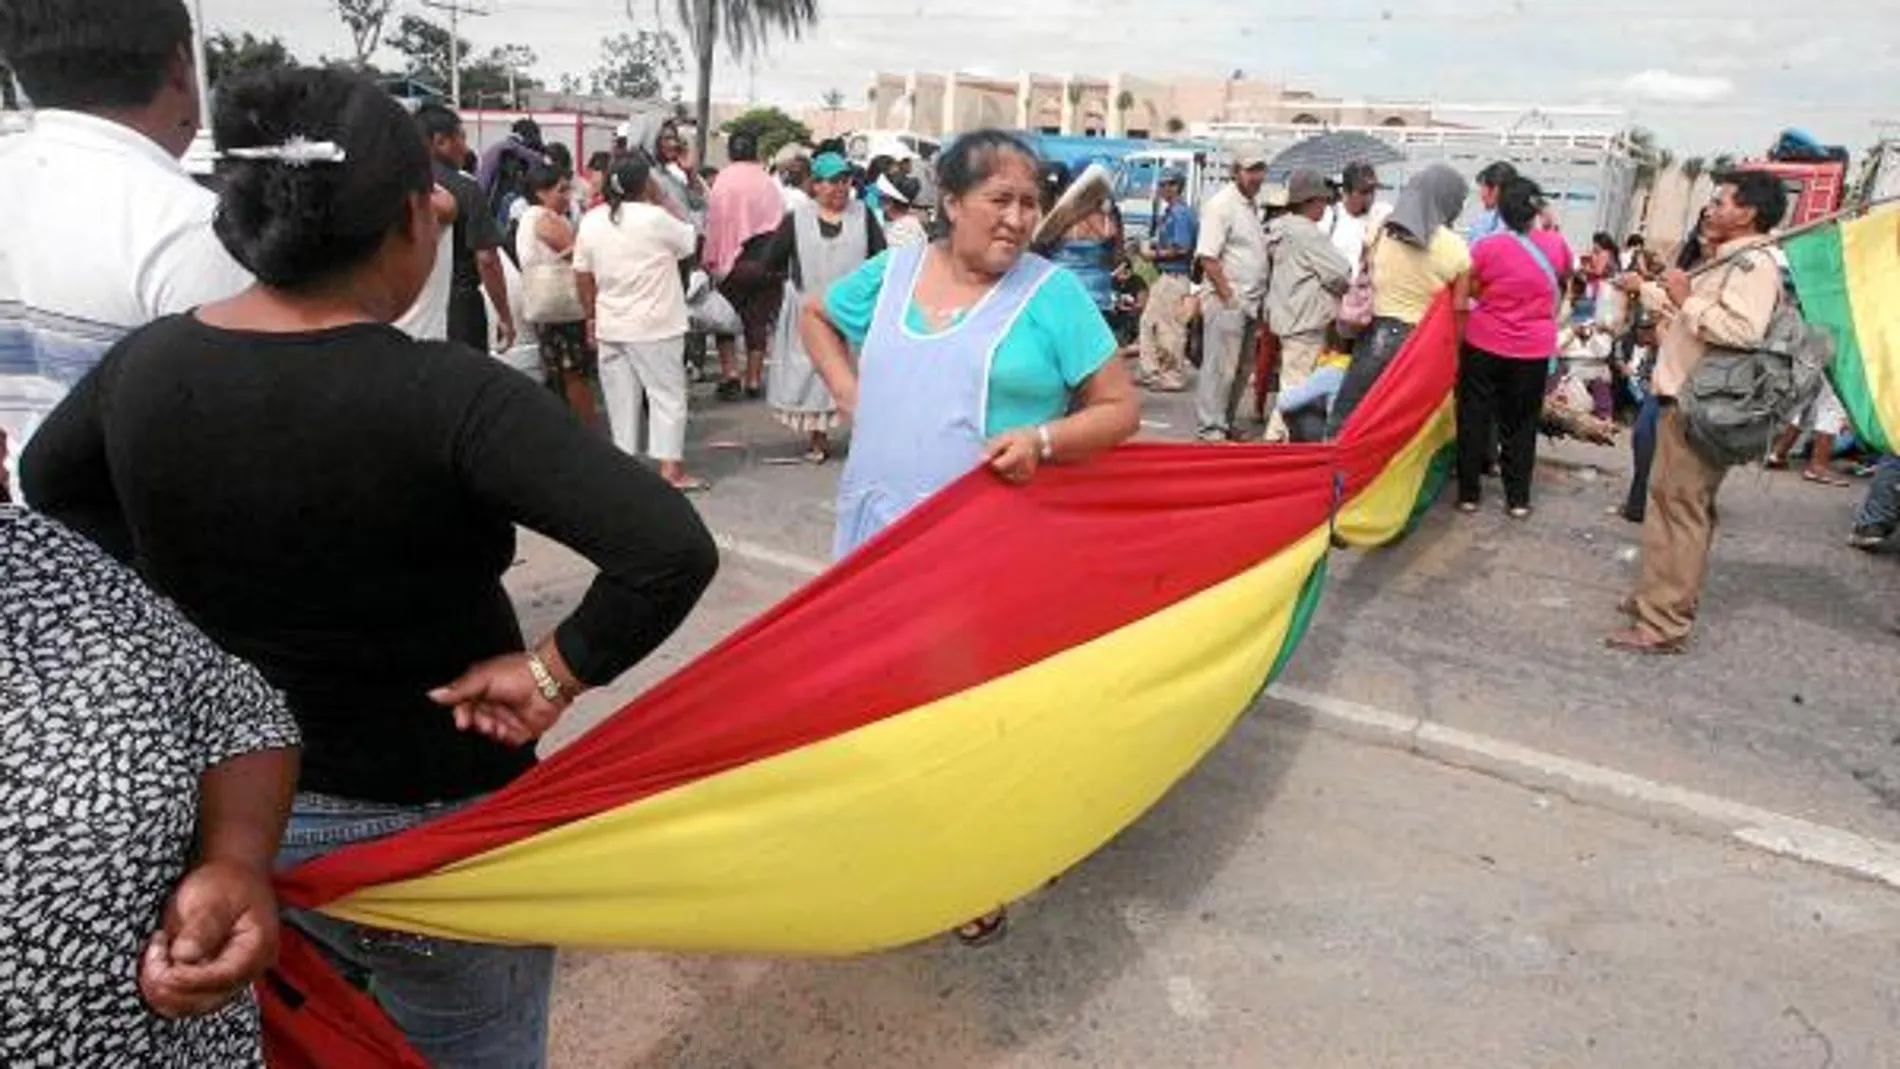 Las protestas por la subida del precio de los alimentos y los hidrocarburos han marcado el inicio de 2011 para Evo Morales